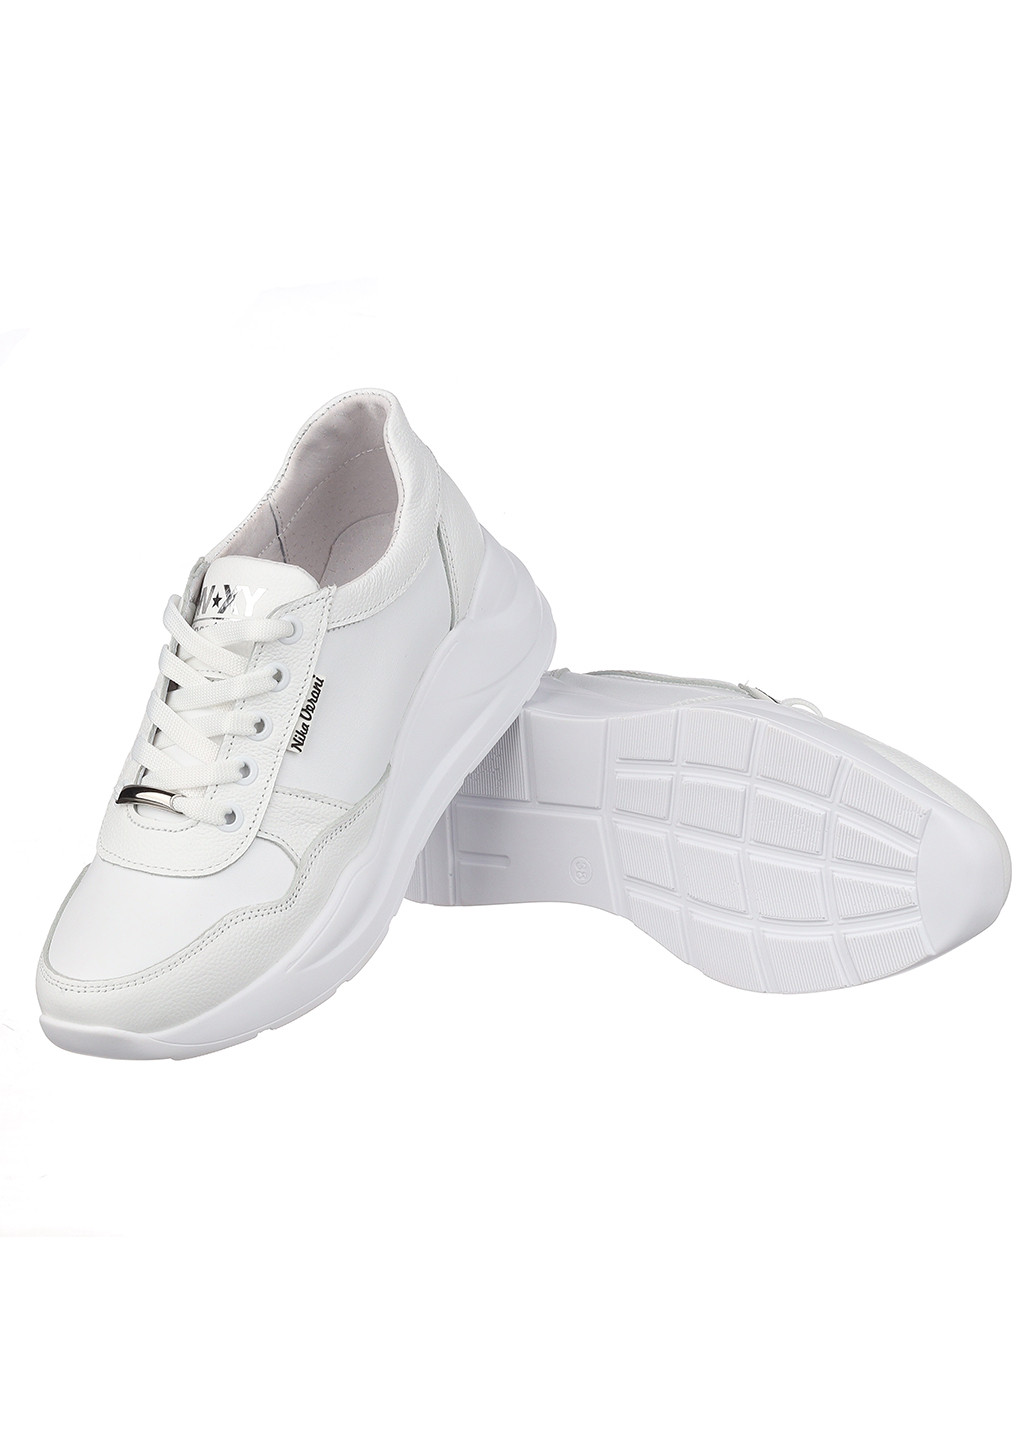 Белые демисезонные женские кроссовки 880 Nika Veroni